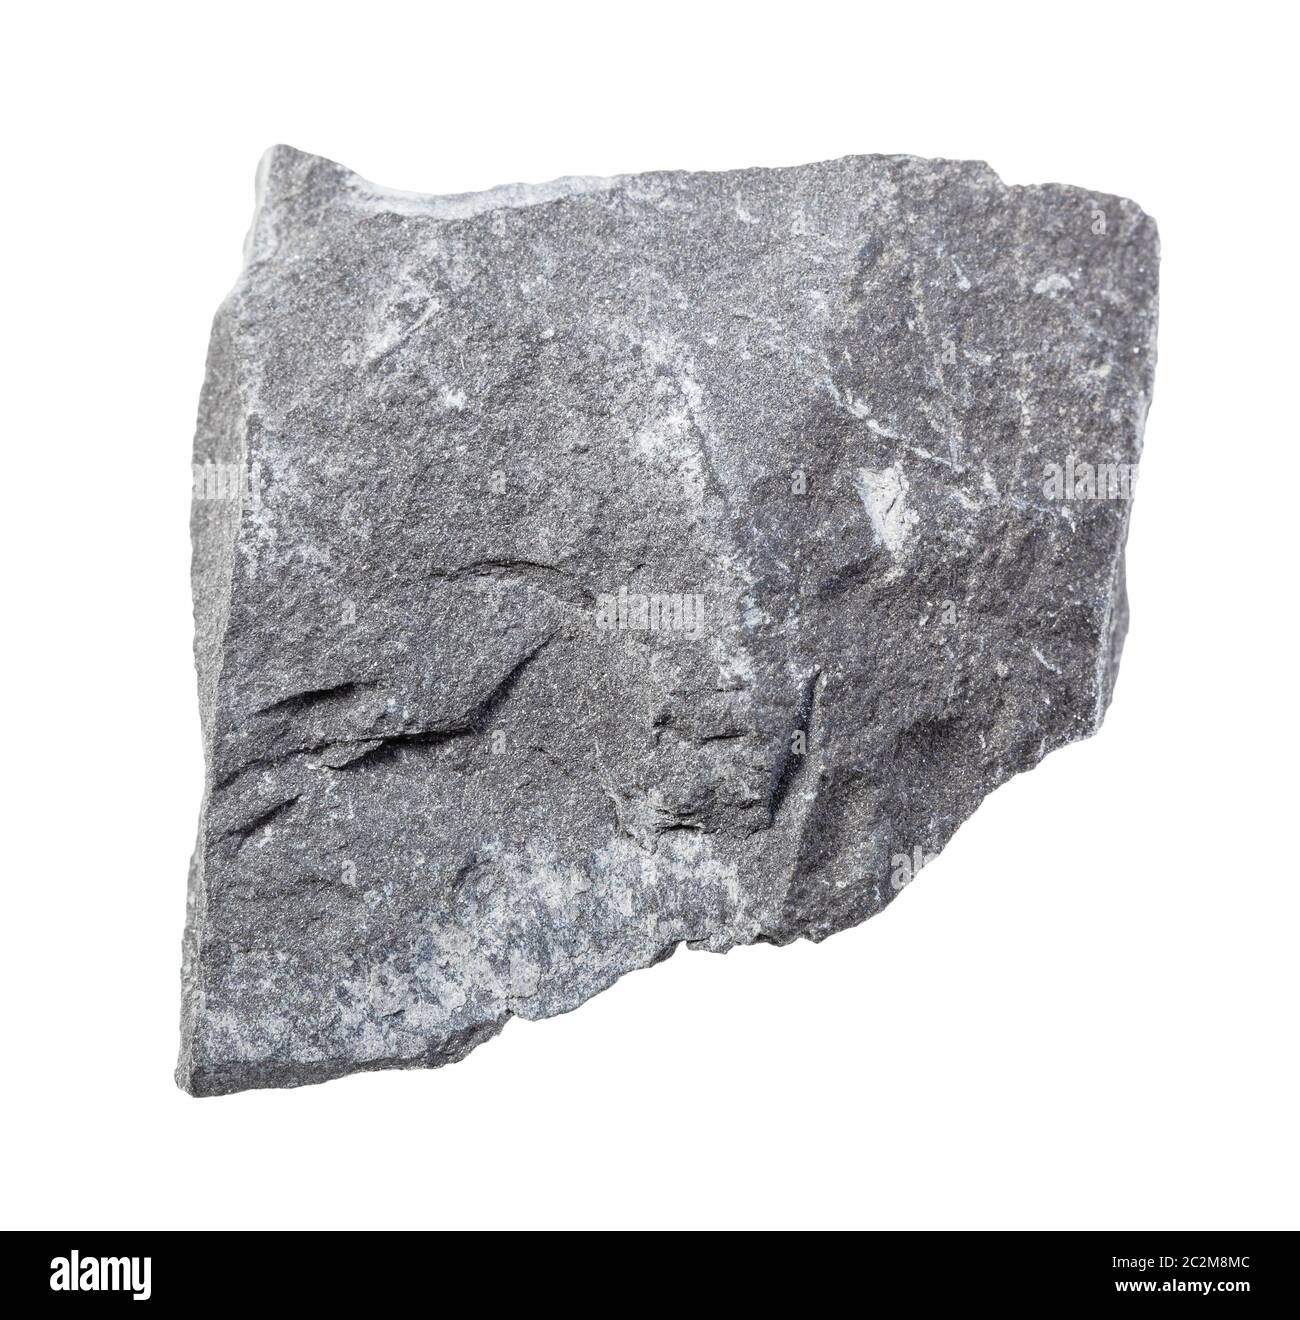 Primo piano di campione di minerale naturale proveniente dalla collezione geologica - pietra argillite grigia non lucida isolata su sfondo bianco Foto Stock